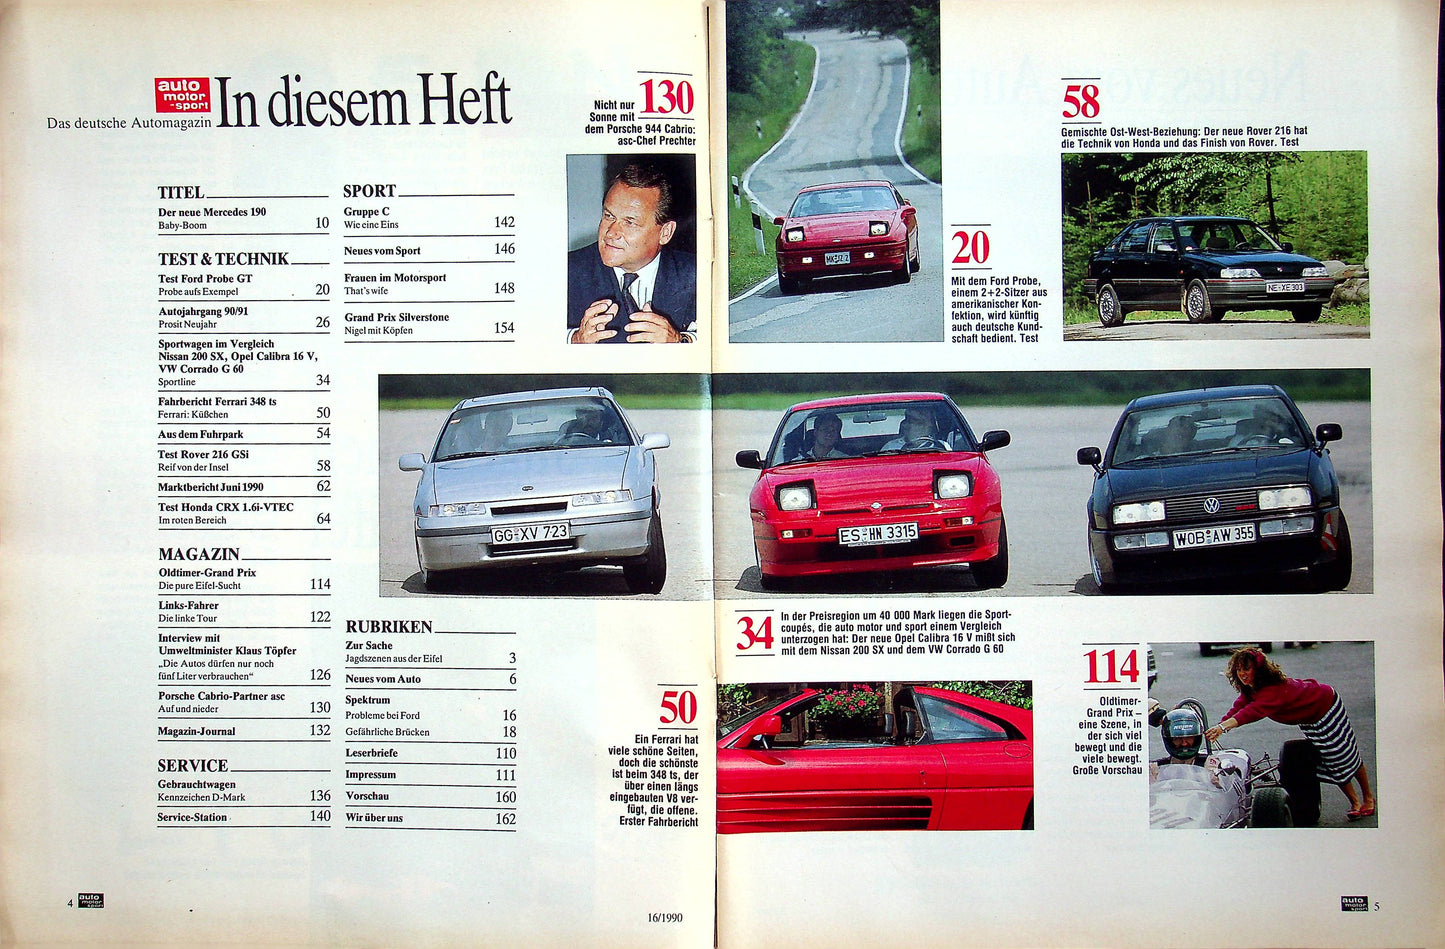 Auto Motor und Sport 16/1990